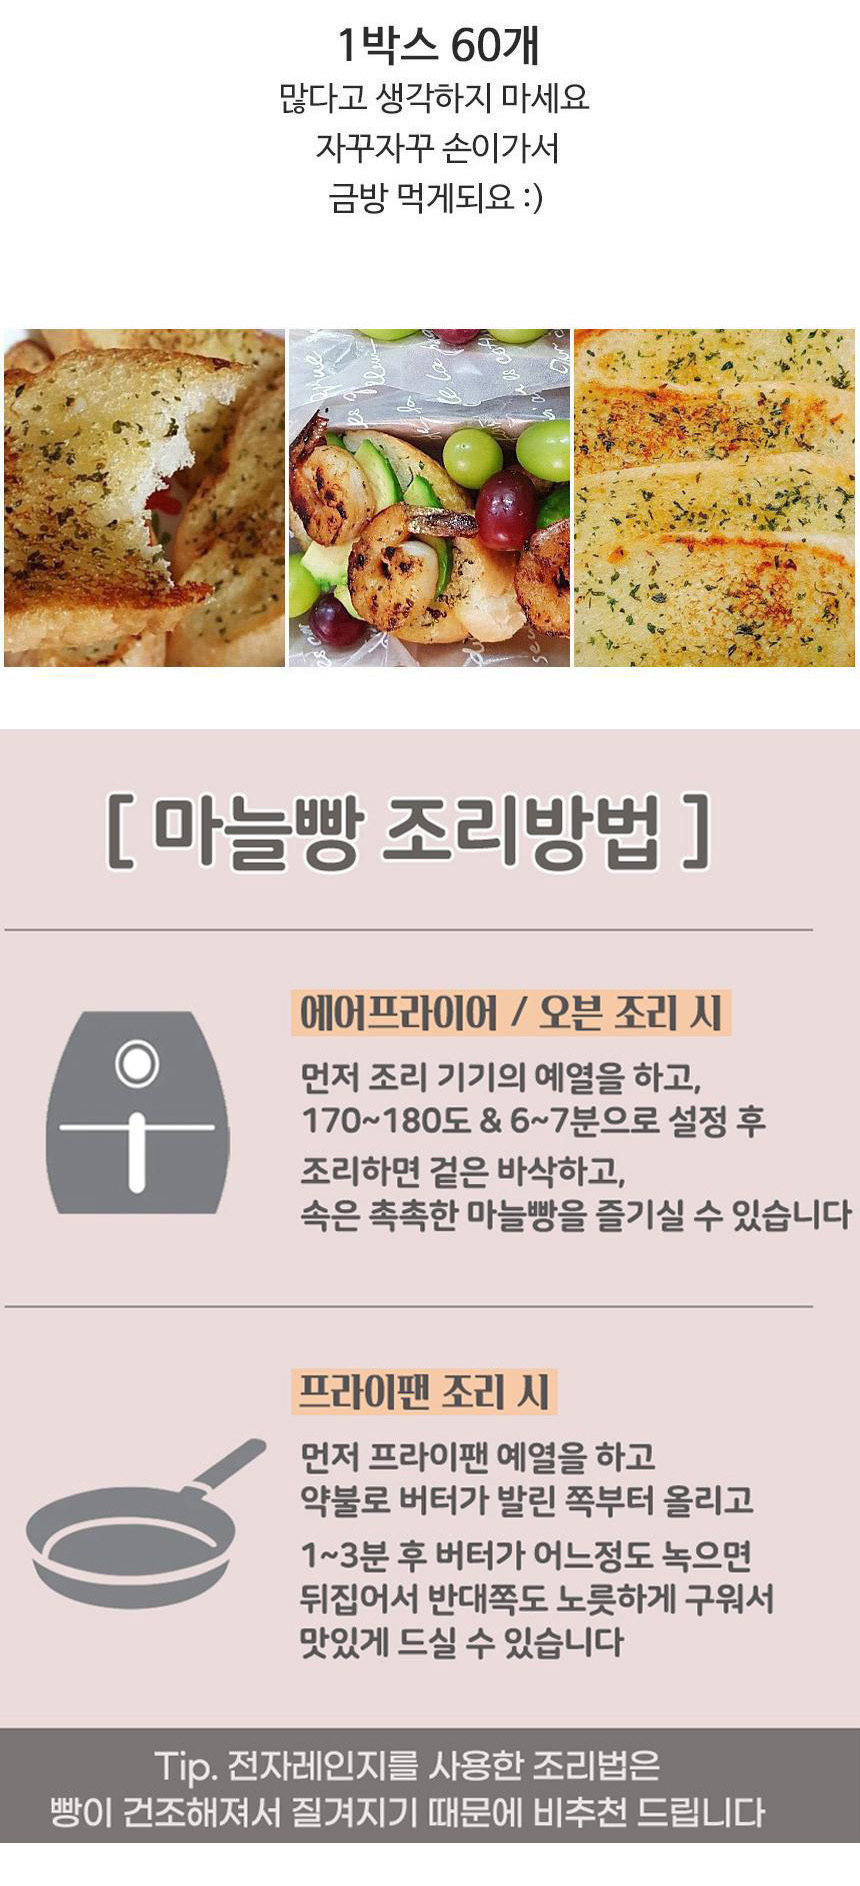 오룡식품 정품 마늘빵 1000G (아이스배송) - G마켓 모바일